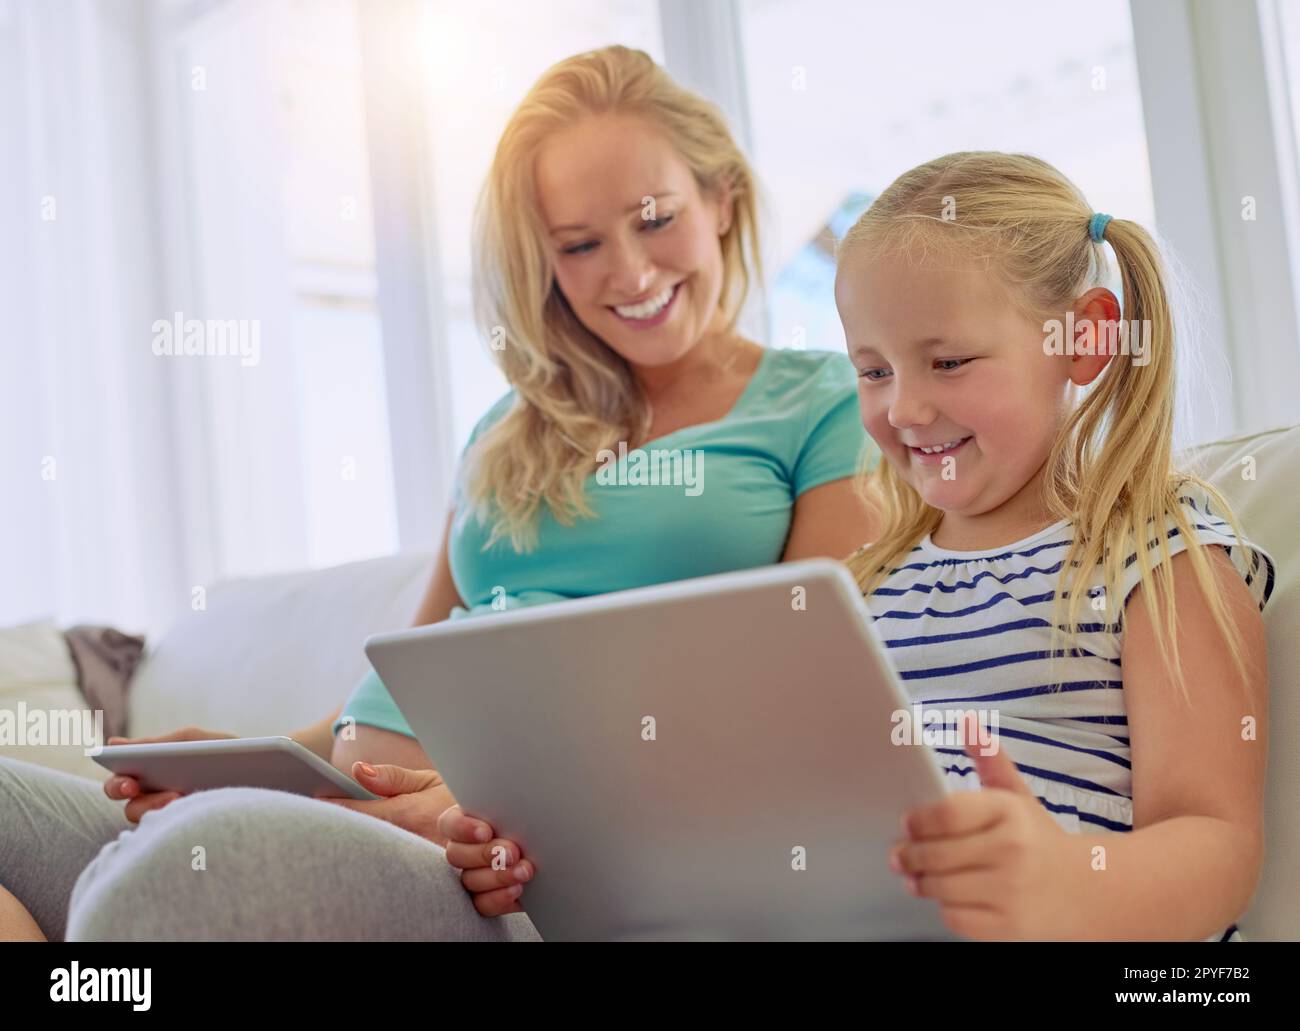 Ich recherchiere darüber, eine große Schwester zu werden. Eine schwangere Frau und ihre kleine Tochter, die zu Hause digitale Tablets verwenden. Stockfoto